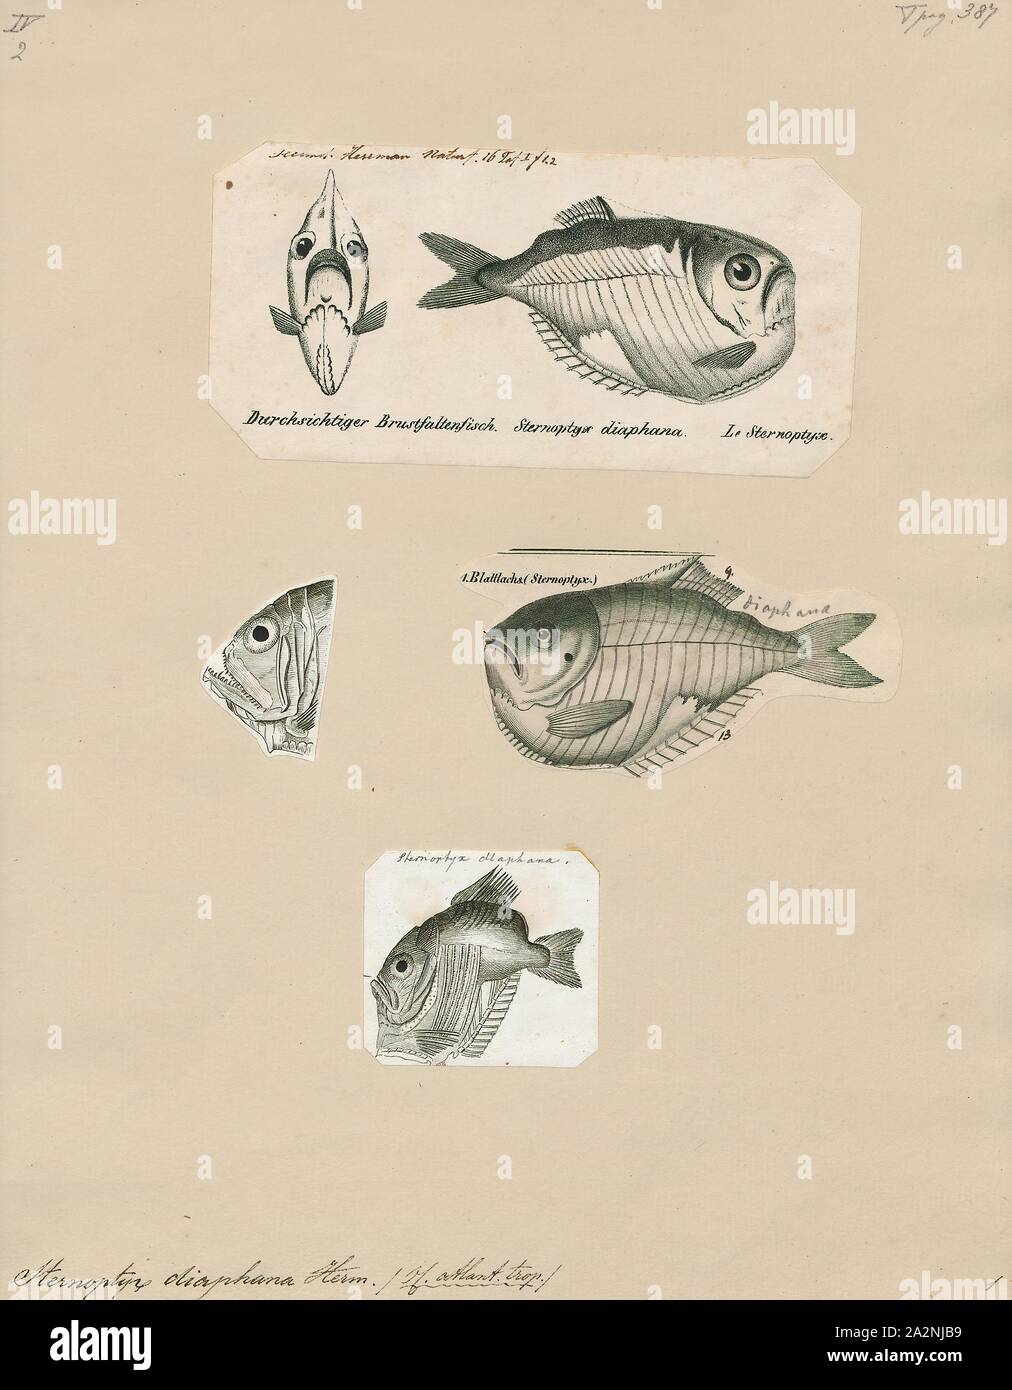 Sternoptyx diaphana, Imprimer, Sternoptyx diaphana, le hatchetfish diaphanes, est une espèce de poissons à nageoires dans la famille Sternoptychidae. C'est l'espèce type du genre Sternoptyx, et a été décrite par le naturaliste français Johann Hermann en 1781, 1700-1880. Banque D'Images